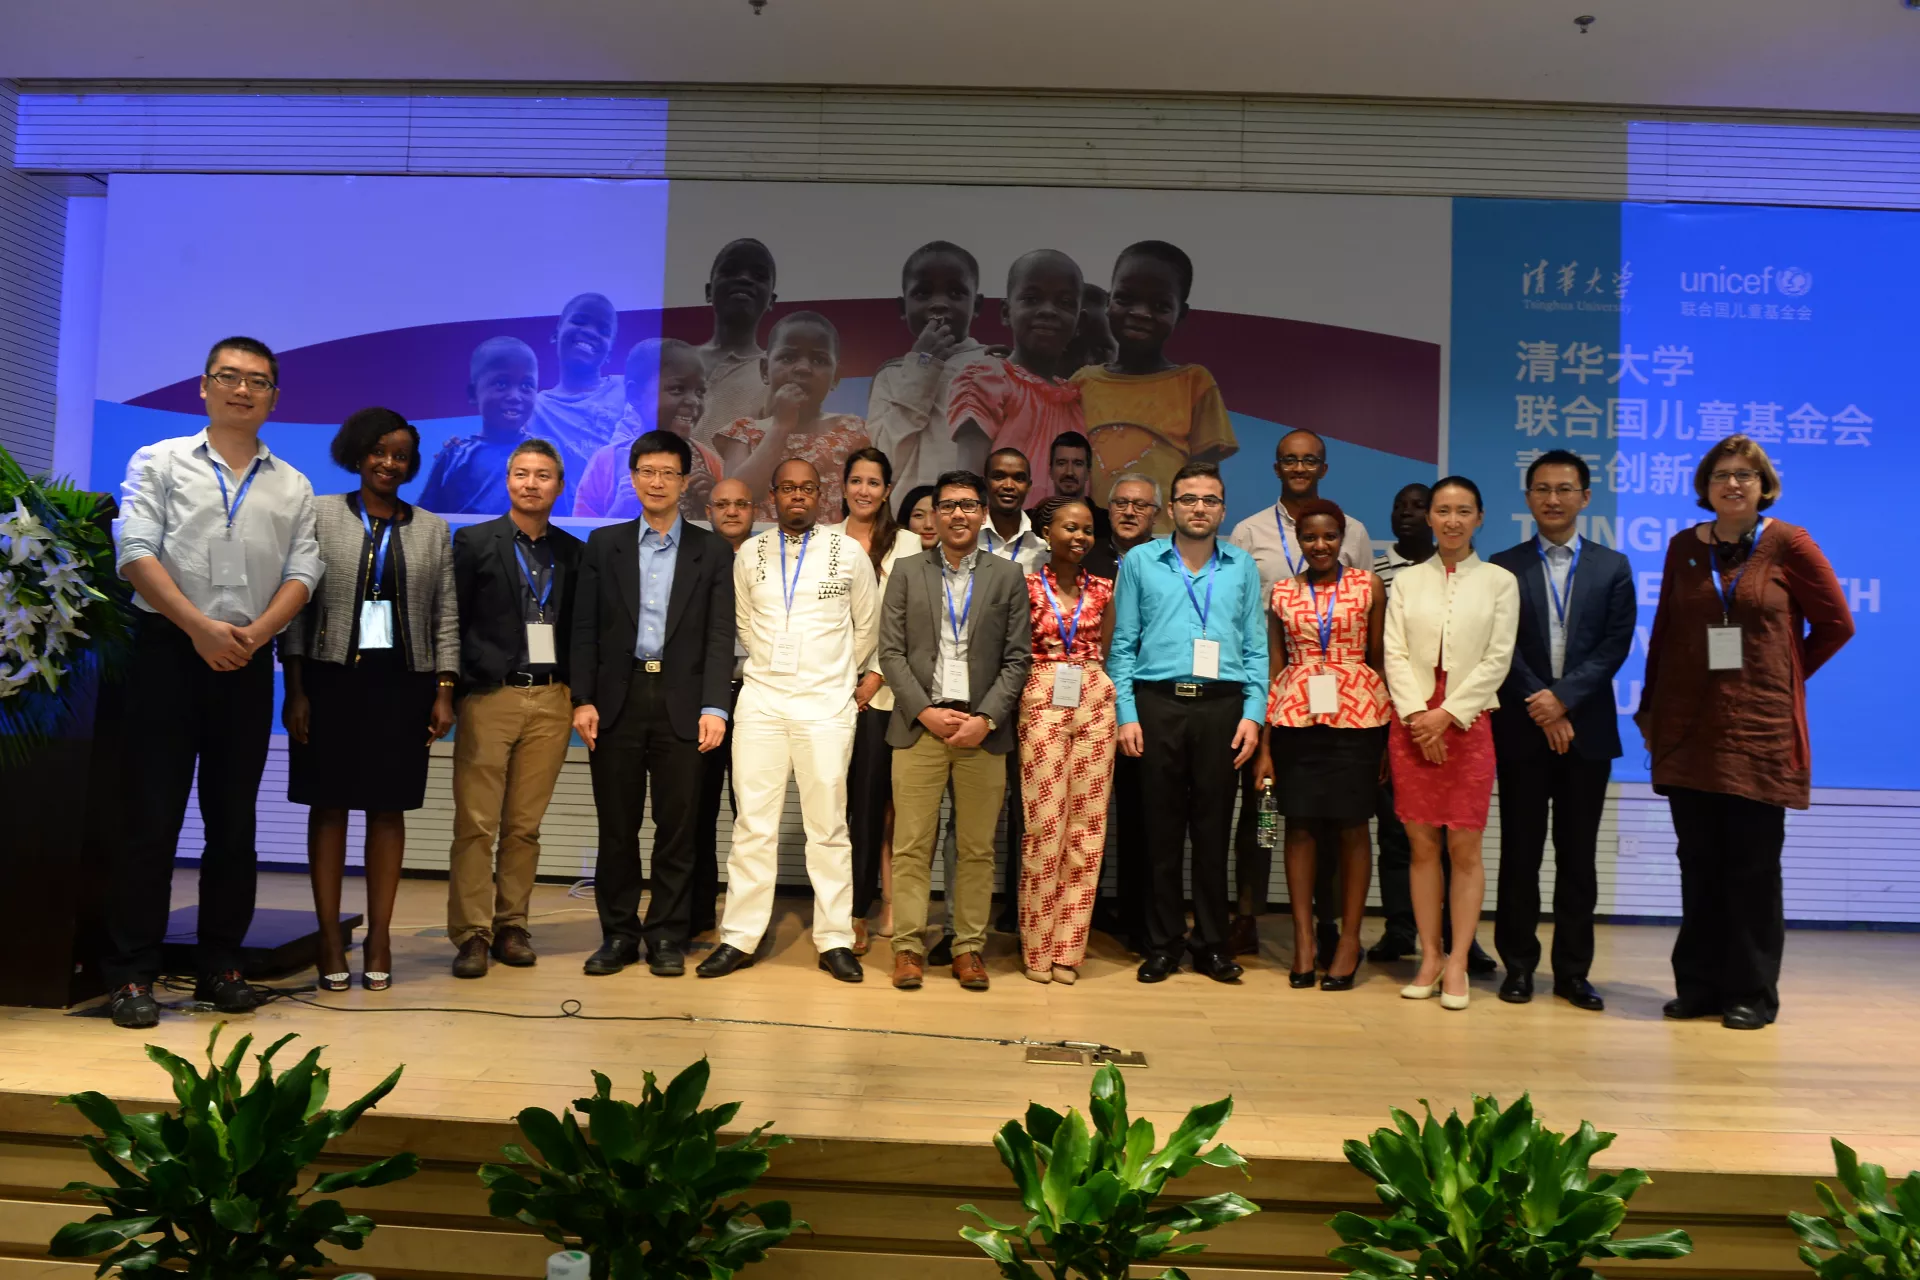 来自世界各地的论坛嘉宾、创新青年代表在首届清华大学-联合国儿童基金会青年创新论坛。